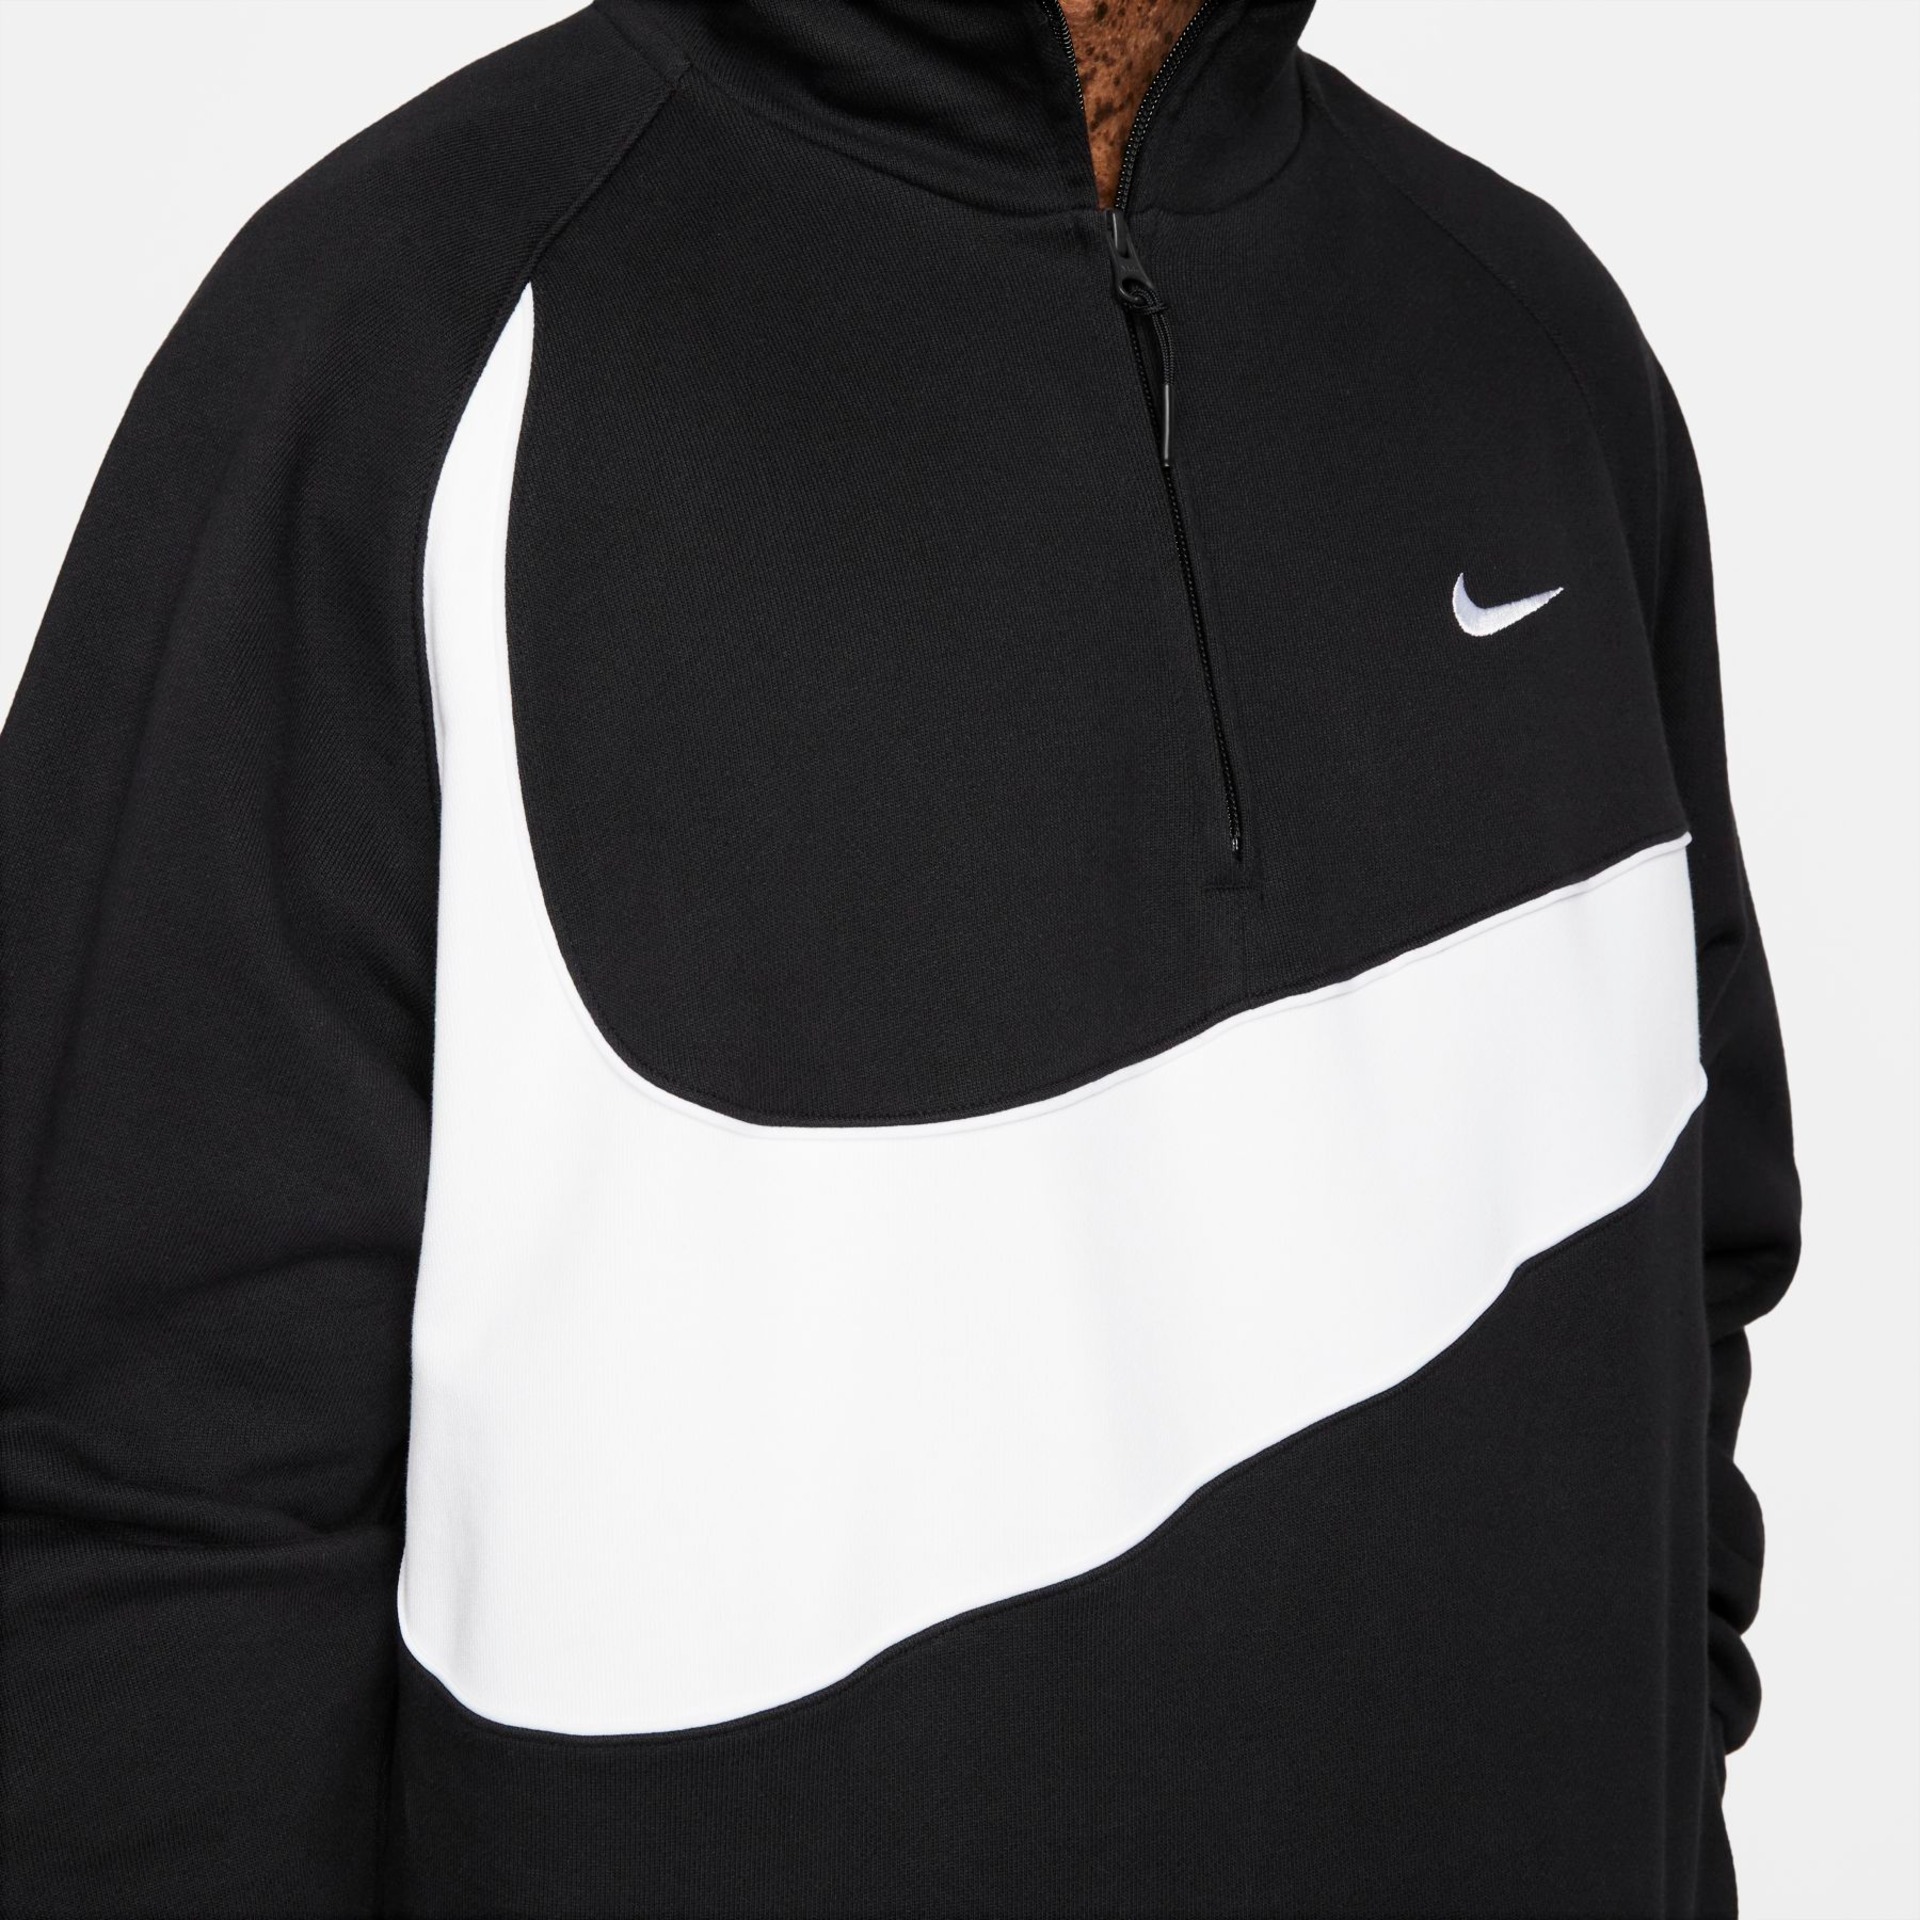 Blusão Nike Swoosh Masculino - Foto 5